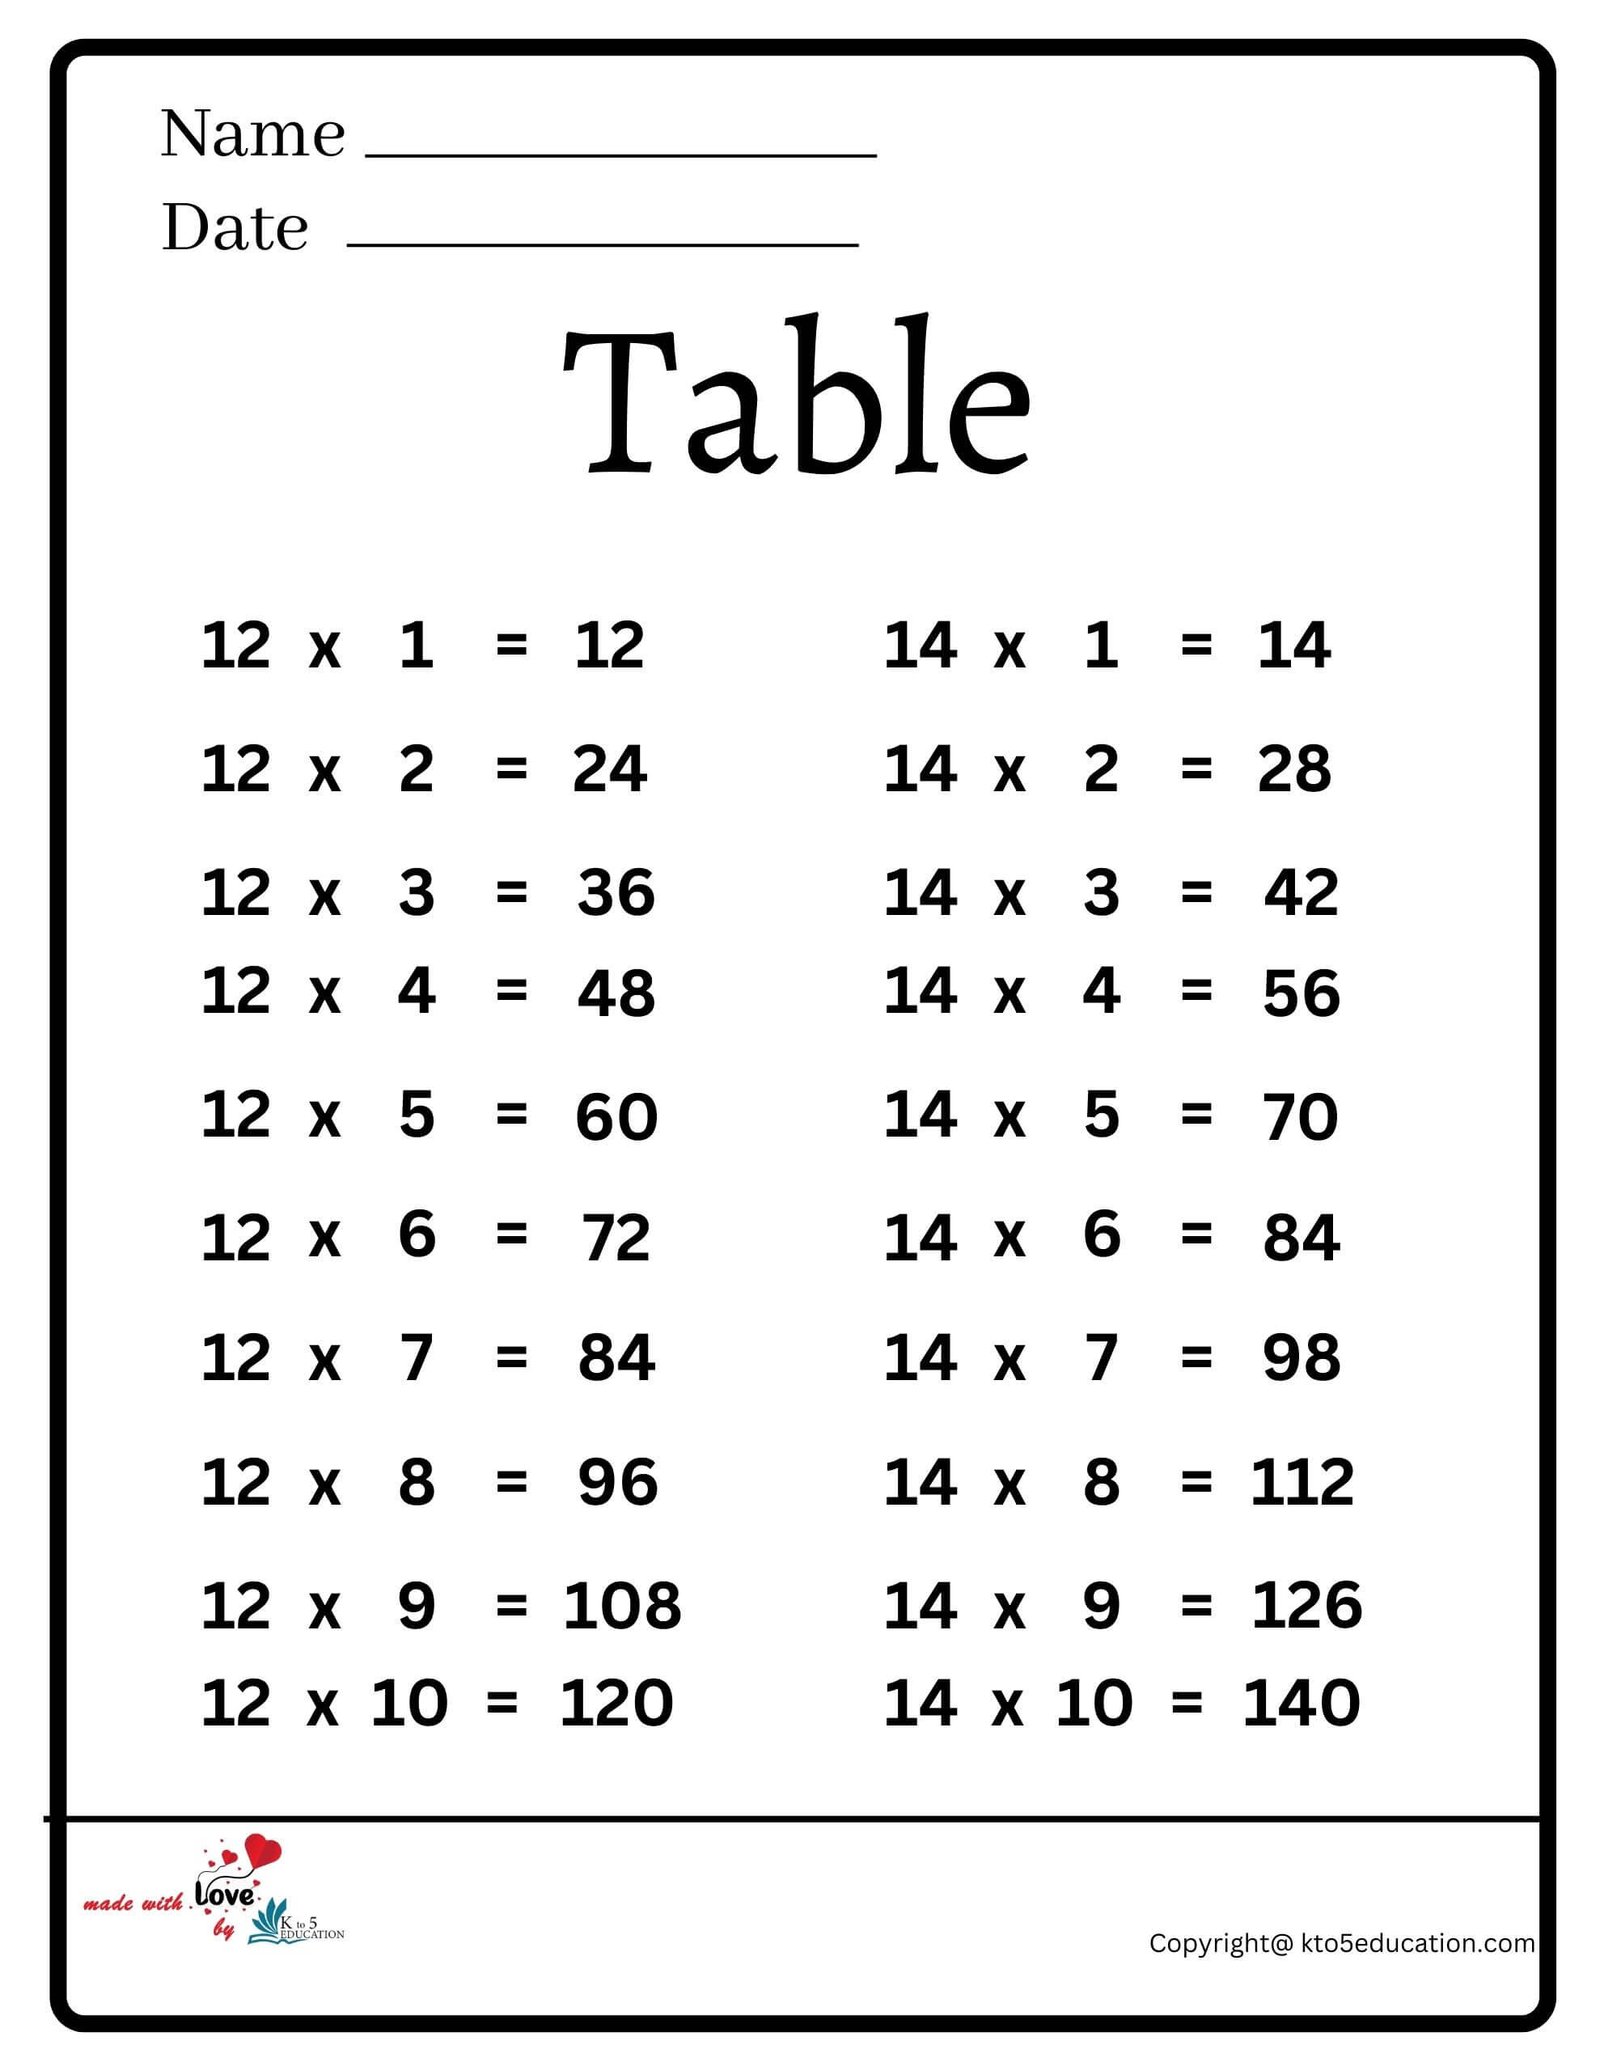 Table Worksheet 2